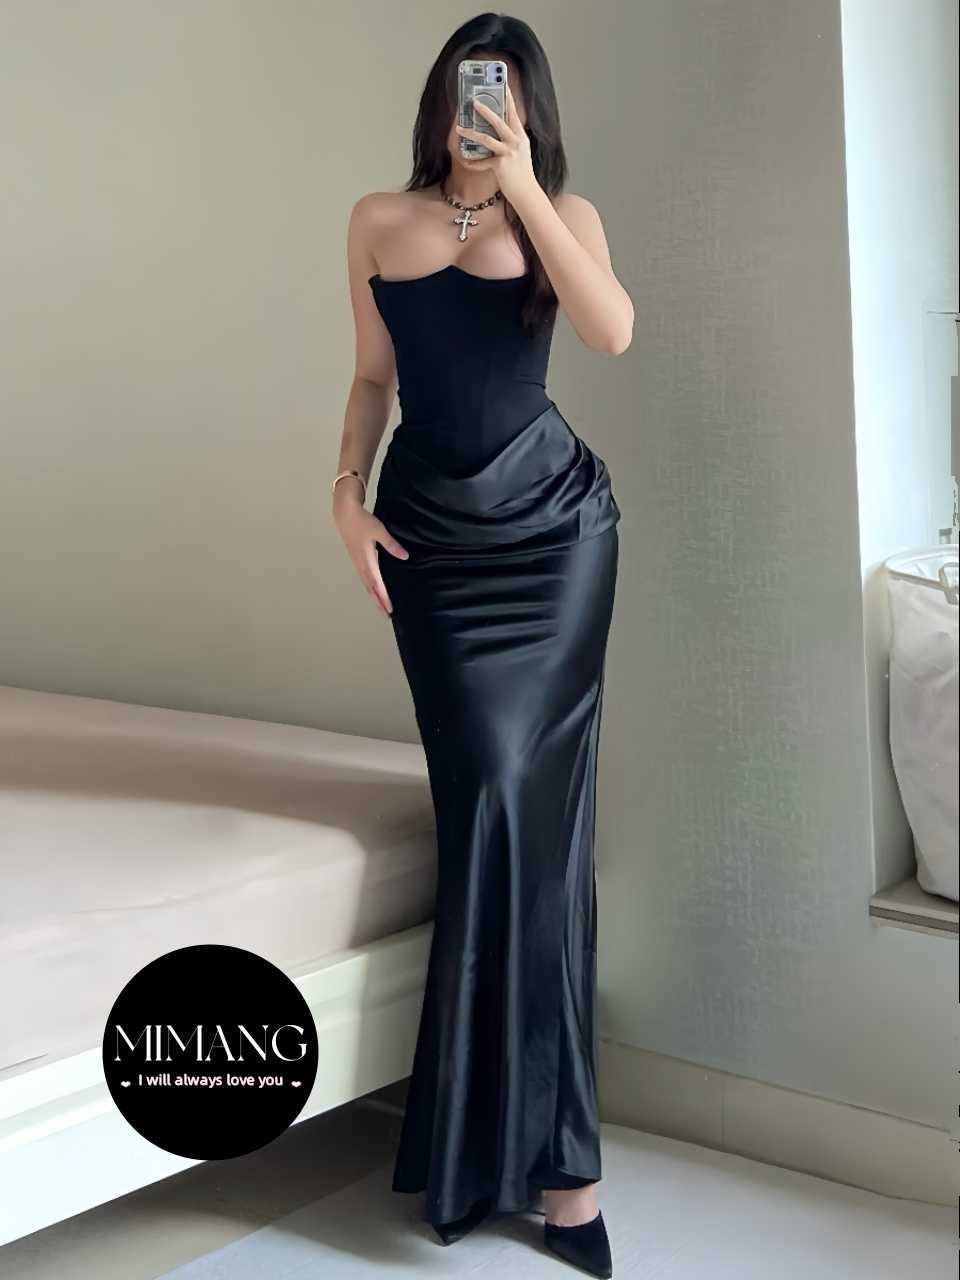 Aftonklänning sexig festklänning fiskben stropplös passform lång svart klänning aftonklänning kvinna